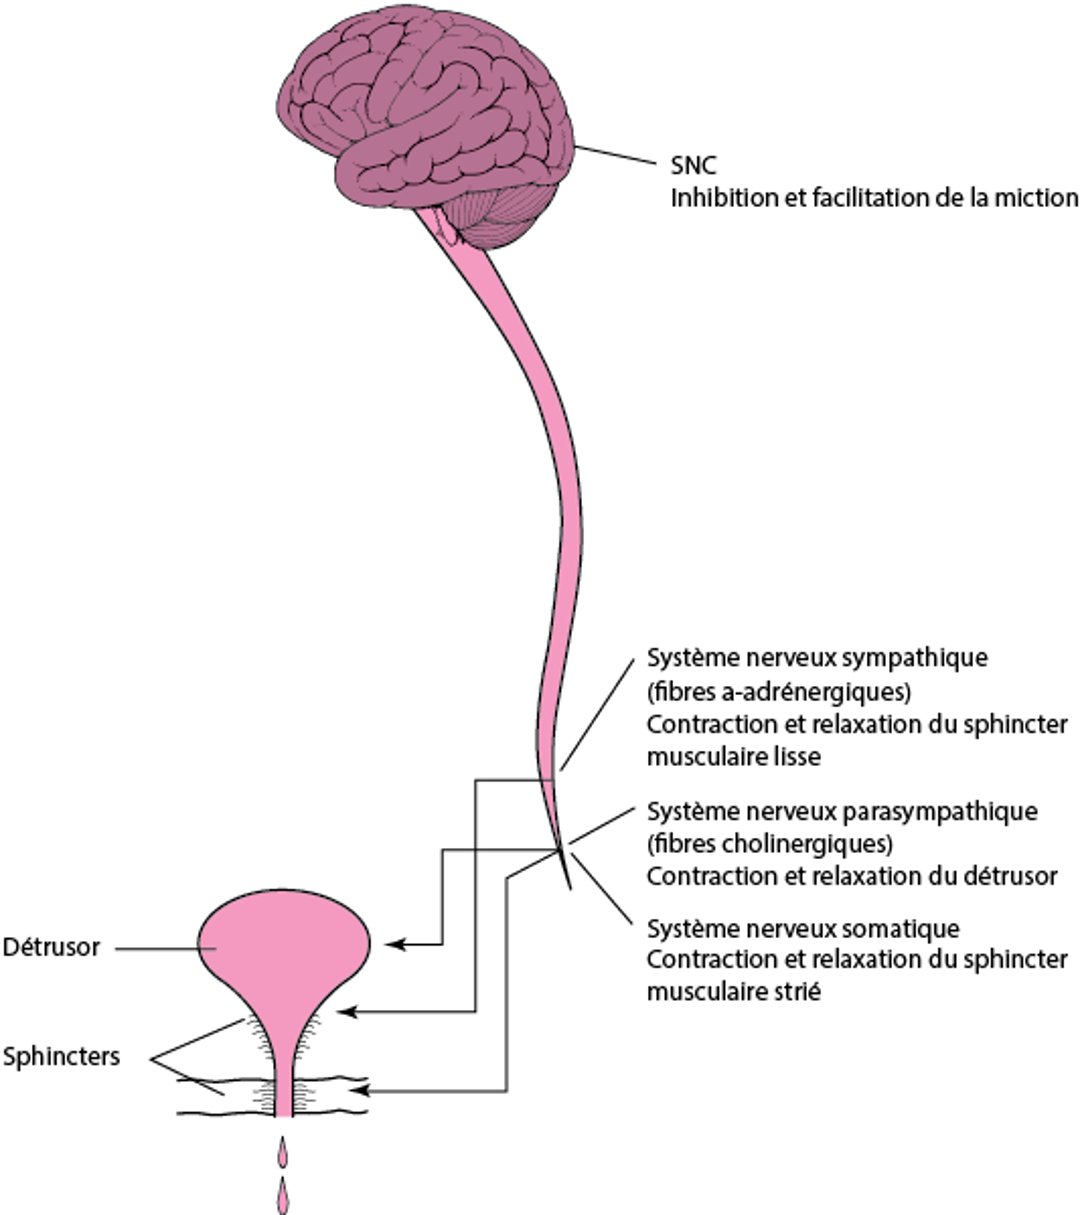 Miction normale: contraction de la vessie coordonnée et relaxation du sphincter urétral